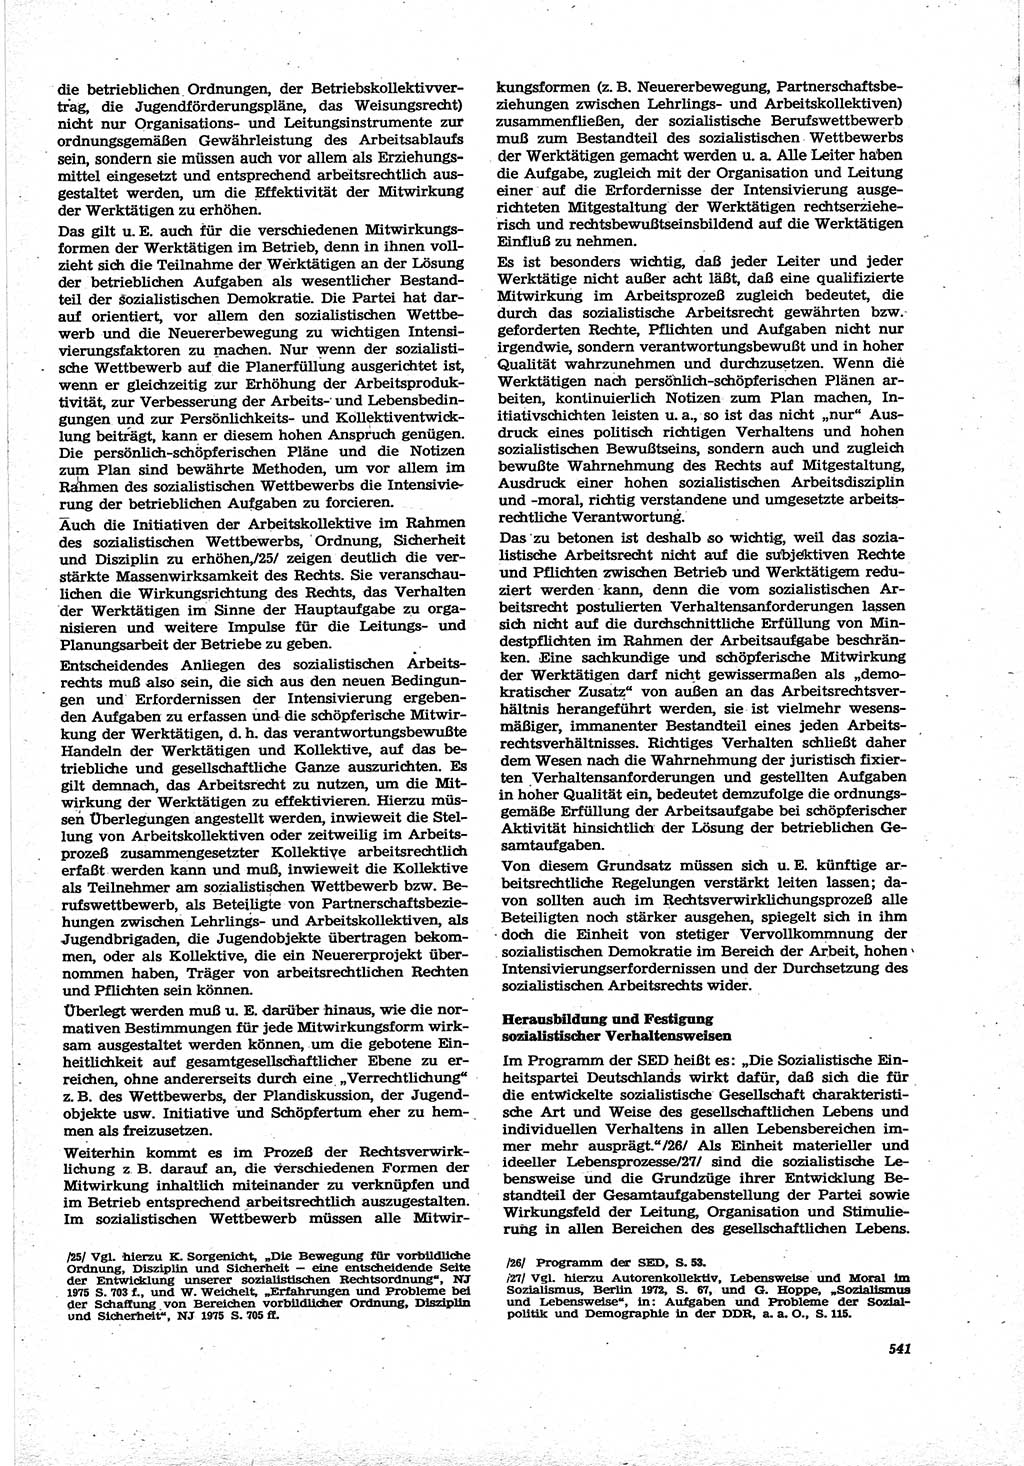 Neue Justiz (NJ), Zeitschrift für Recht und Rechtswissenschaft [Deutsche Demokratische Republik (DDR)], 30. Jahrgang 1976, Seite 541 (NJ DDR 1976, S. 541)